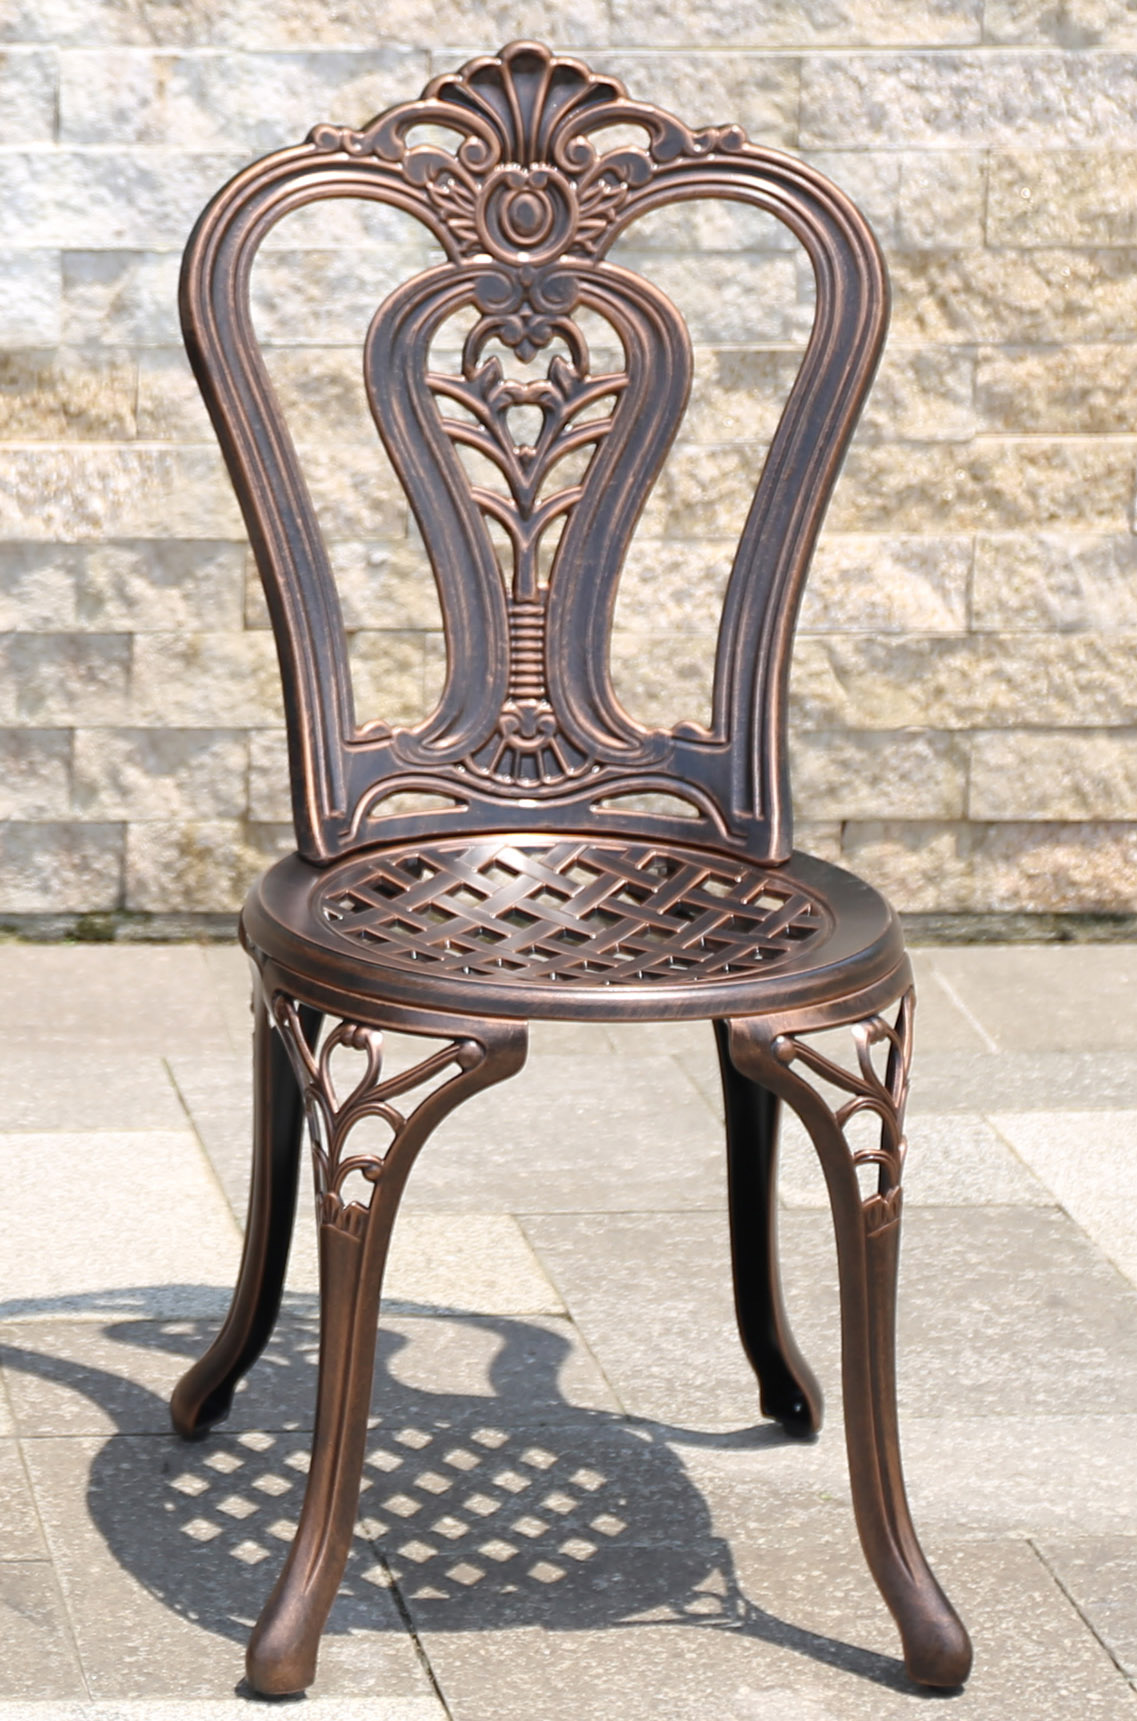 Садовый стул из металла, мебель для летних кафе, уличный стул на балкон, ажурная металлическая мебель для дачи, стул для сада кованый из литого чугуна